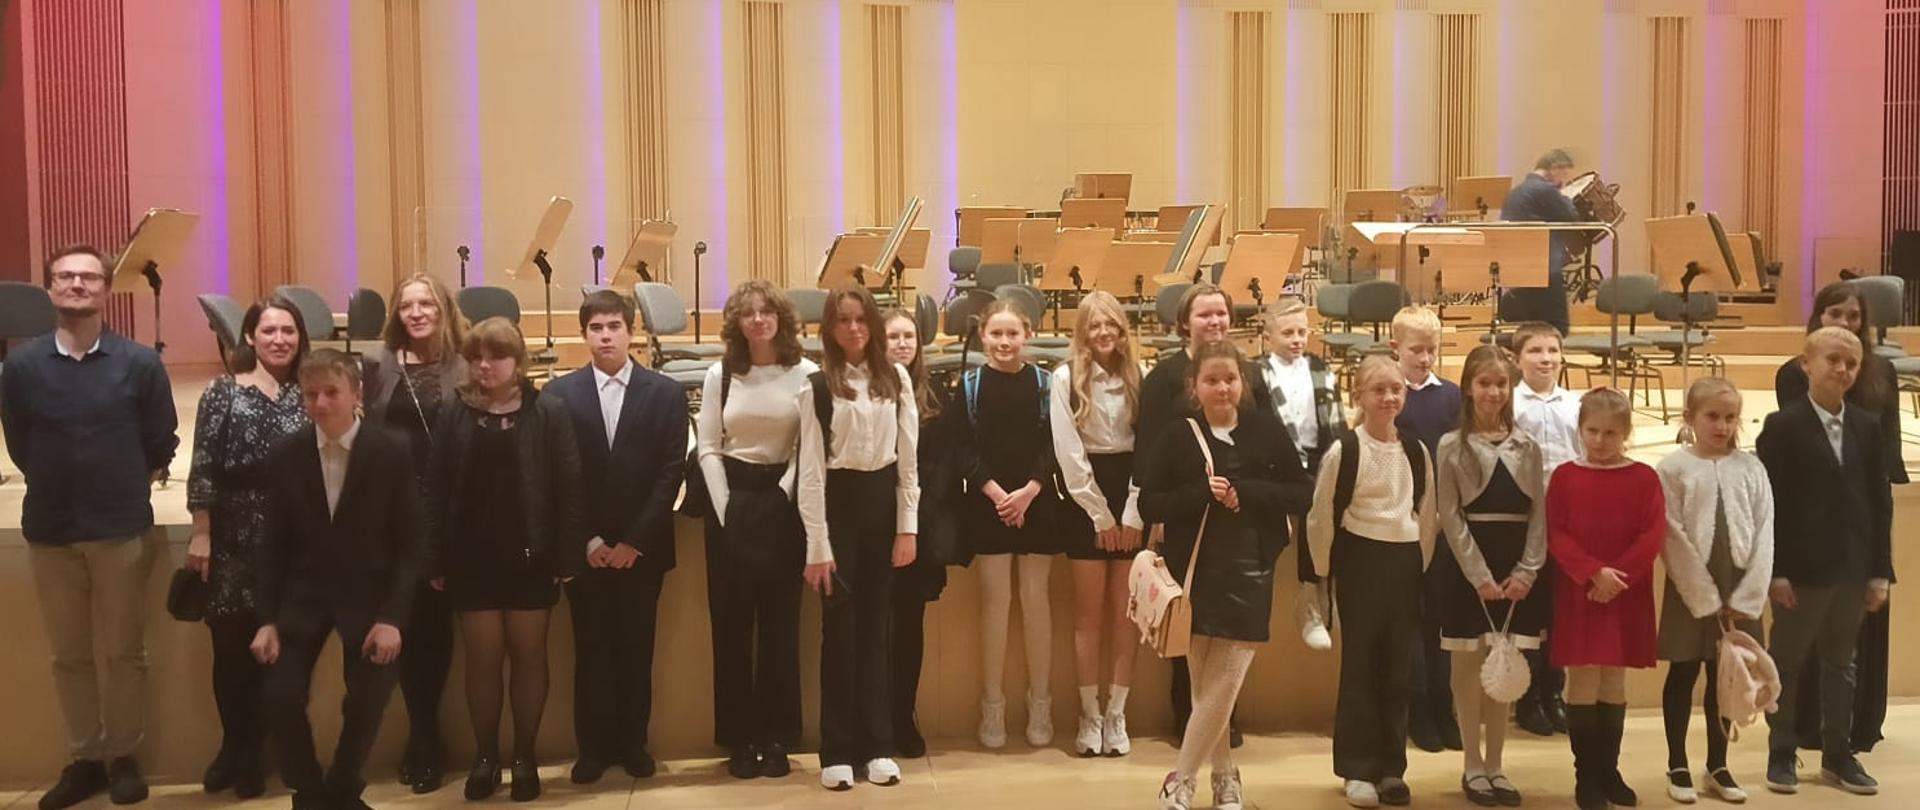 Na zdjęciu widać dzieci i nauczycieli stojących przed sceną w filharmonii.